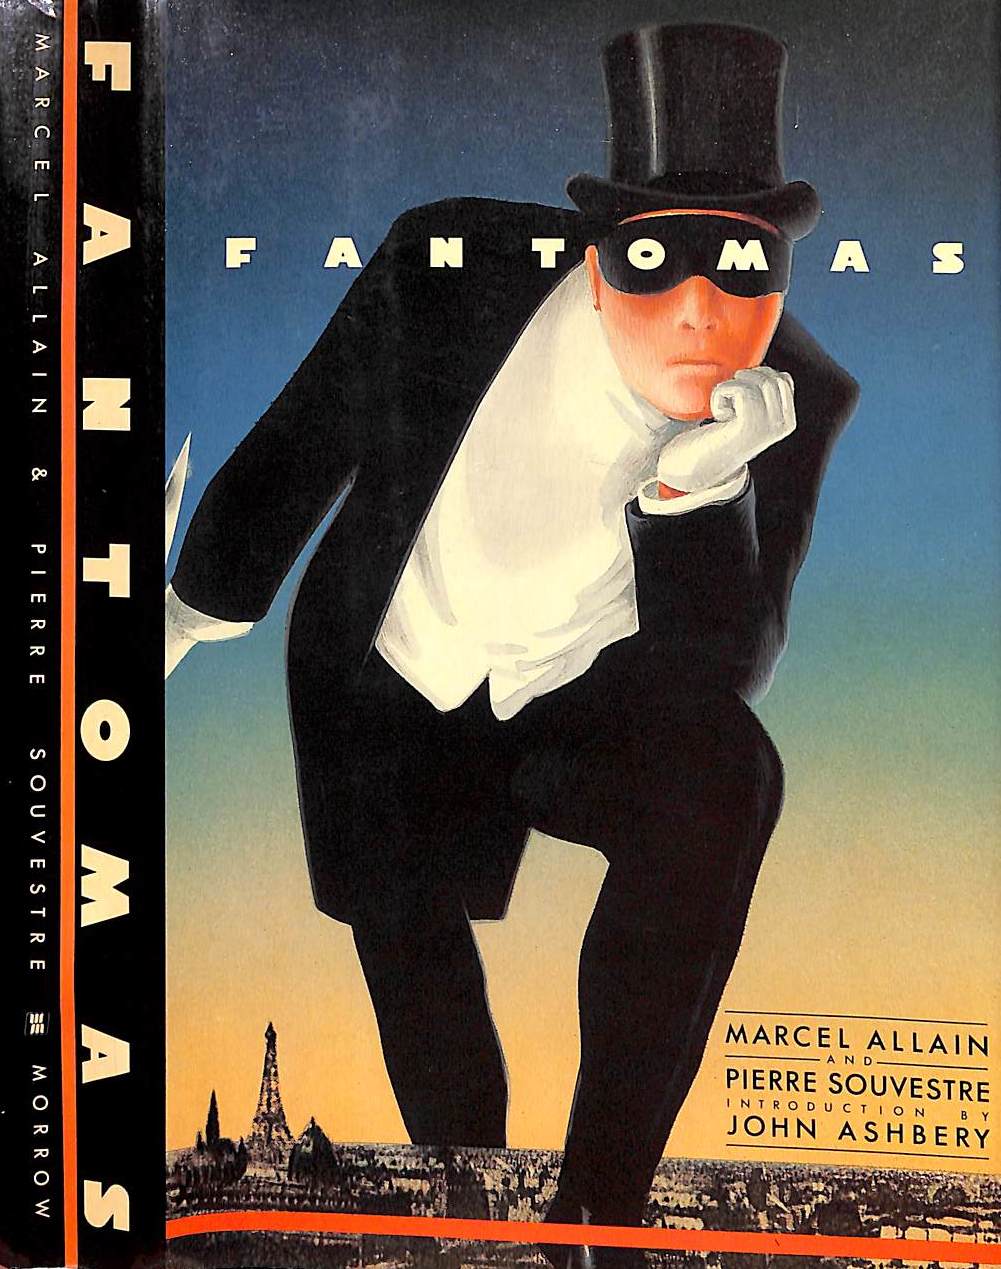 "Fantomas" 1986 ALLAIN, Marcel and SOUVESTRE, Pierre